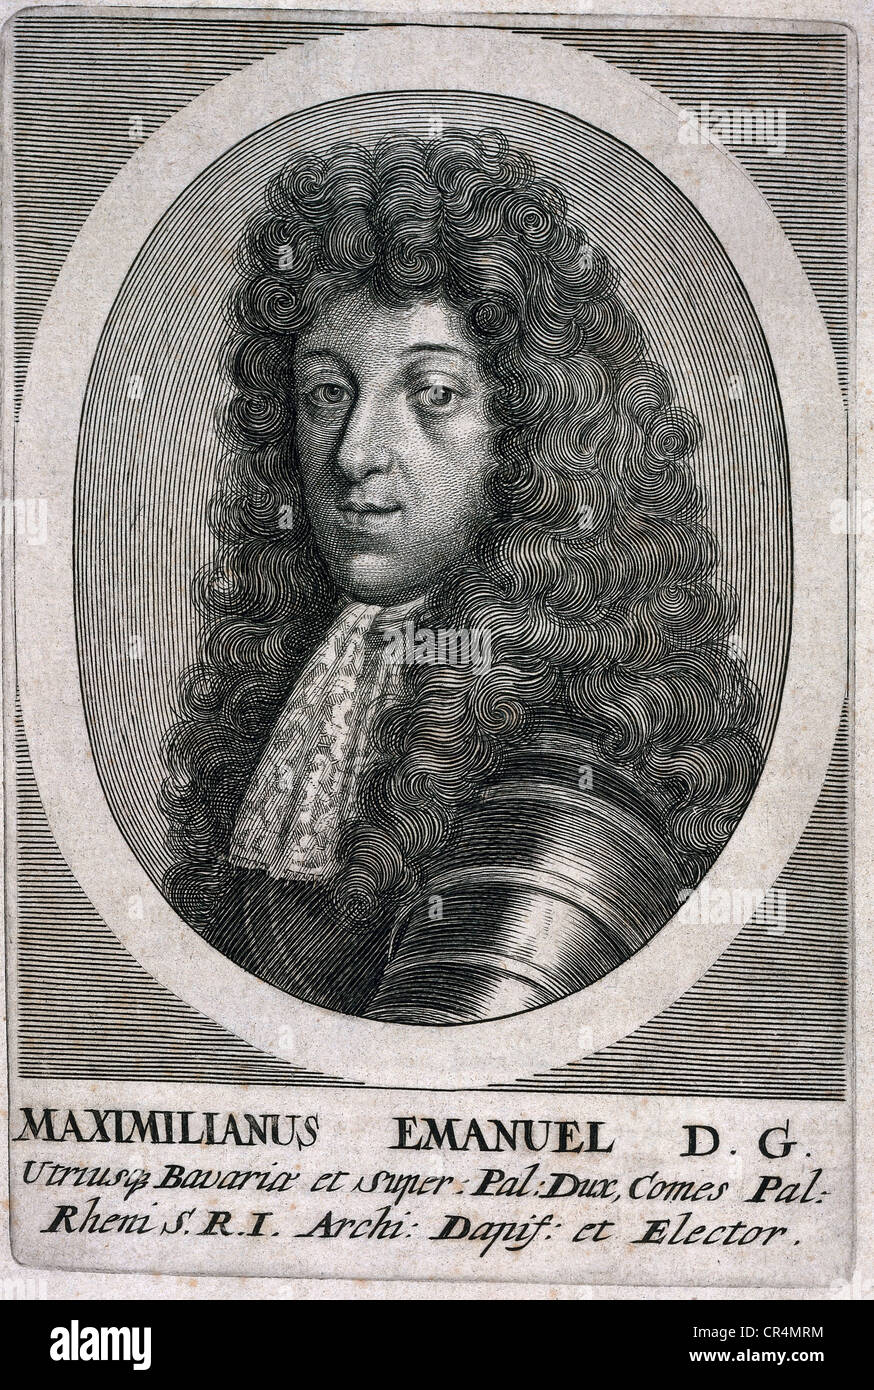 Maximilian II. Emanuel, 11.7.1662 - 26.2.1726, príncipe elector de Baviera 26.5.1679 - 26.2.1726, retrato, grabado en cobre, artista contemporáneo del copyright no ha de ser borrado Foto de stock